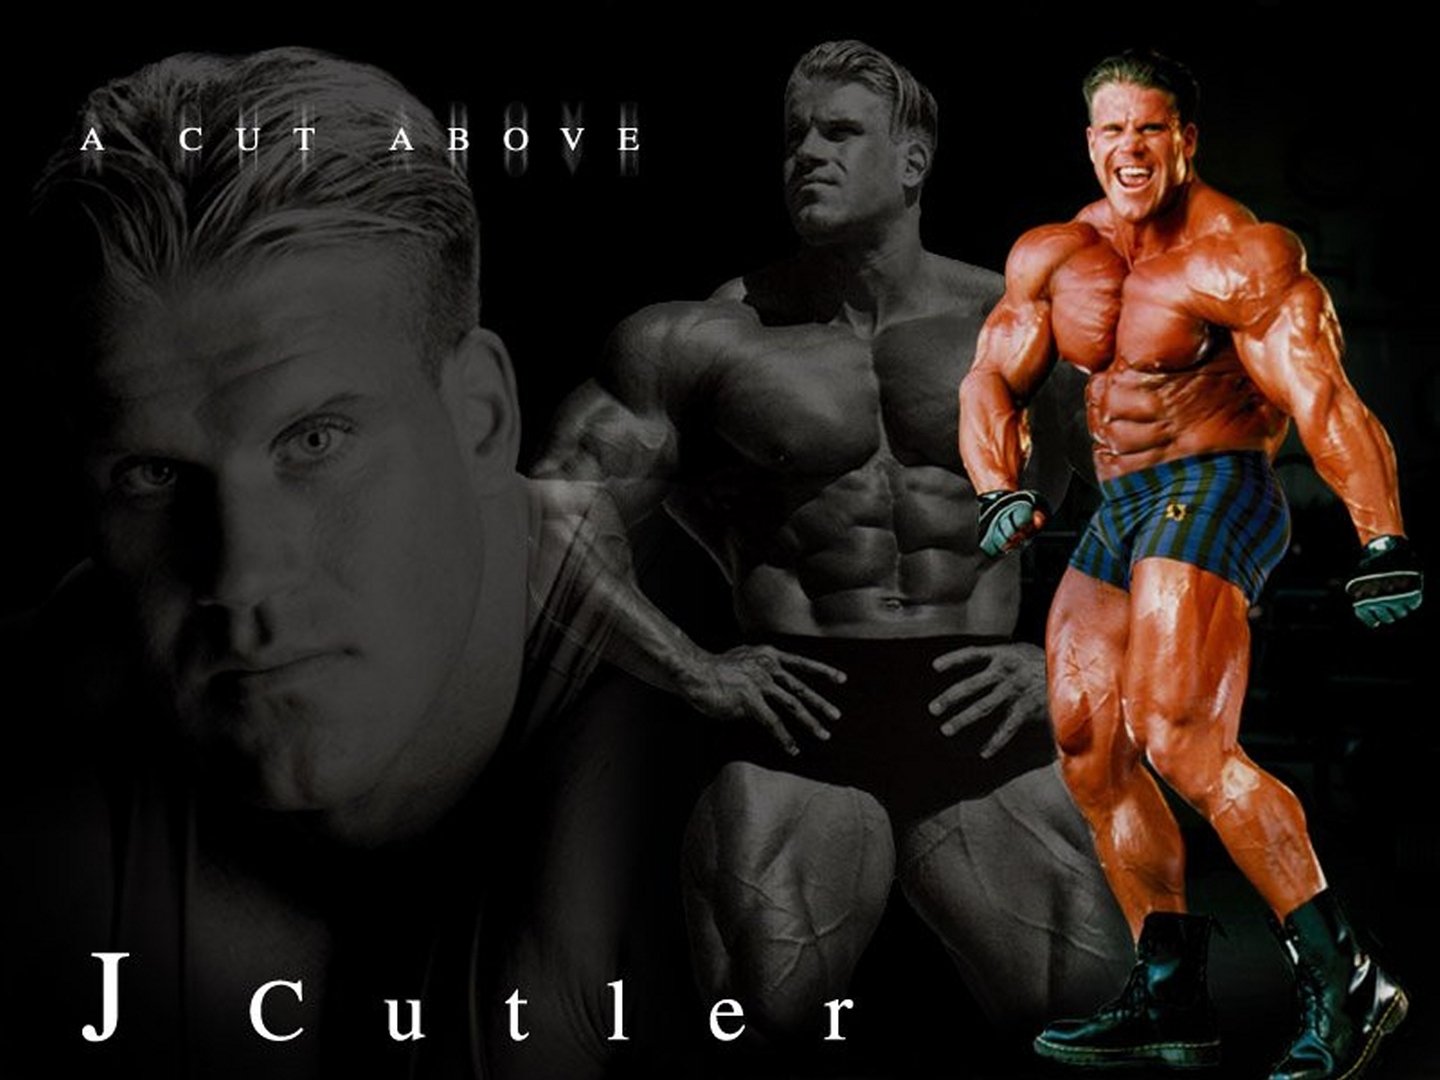 jay cutler hd wallpaper,bodybuilding,bodybuilder,körperliche fitness,fitnessprofi,ohne brust